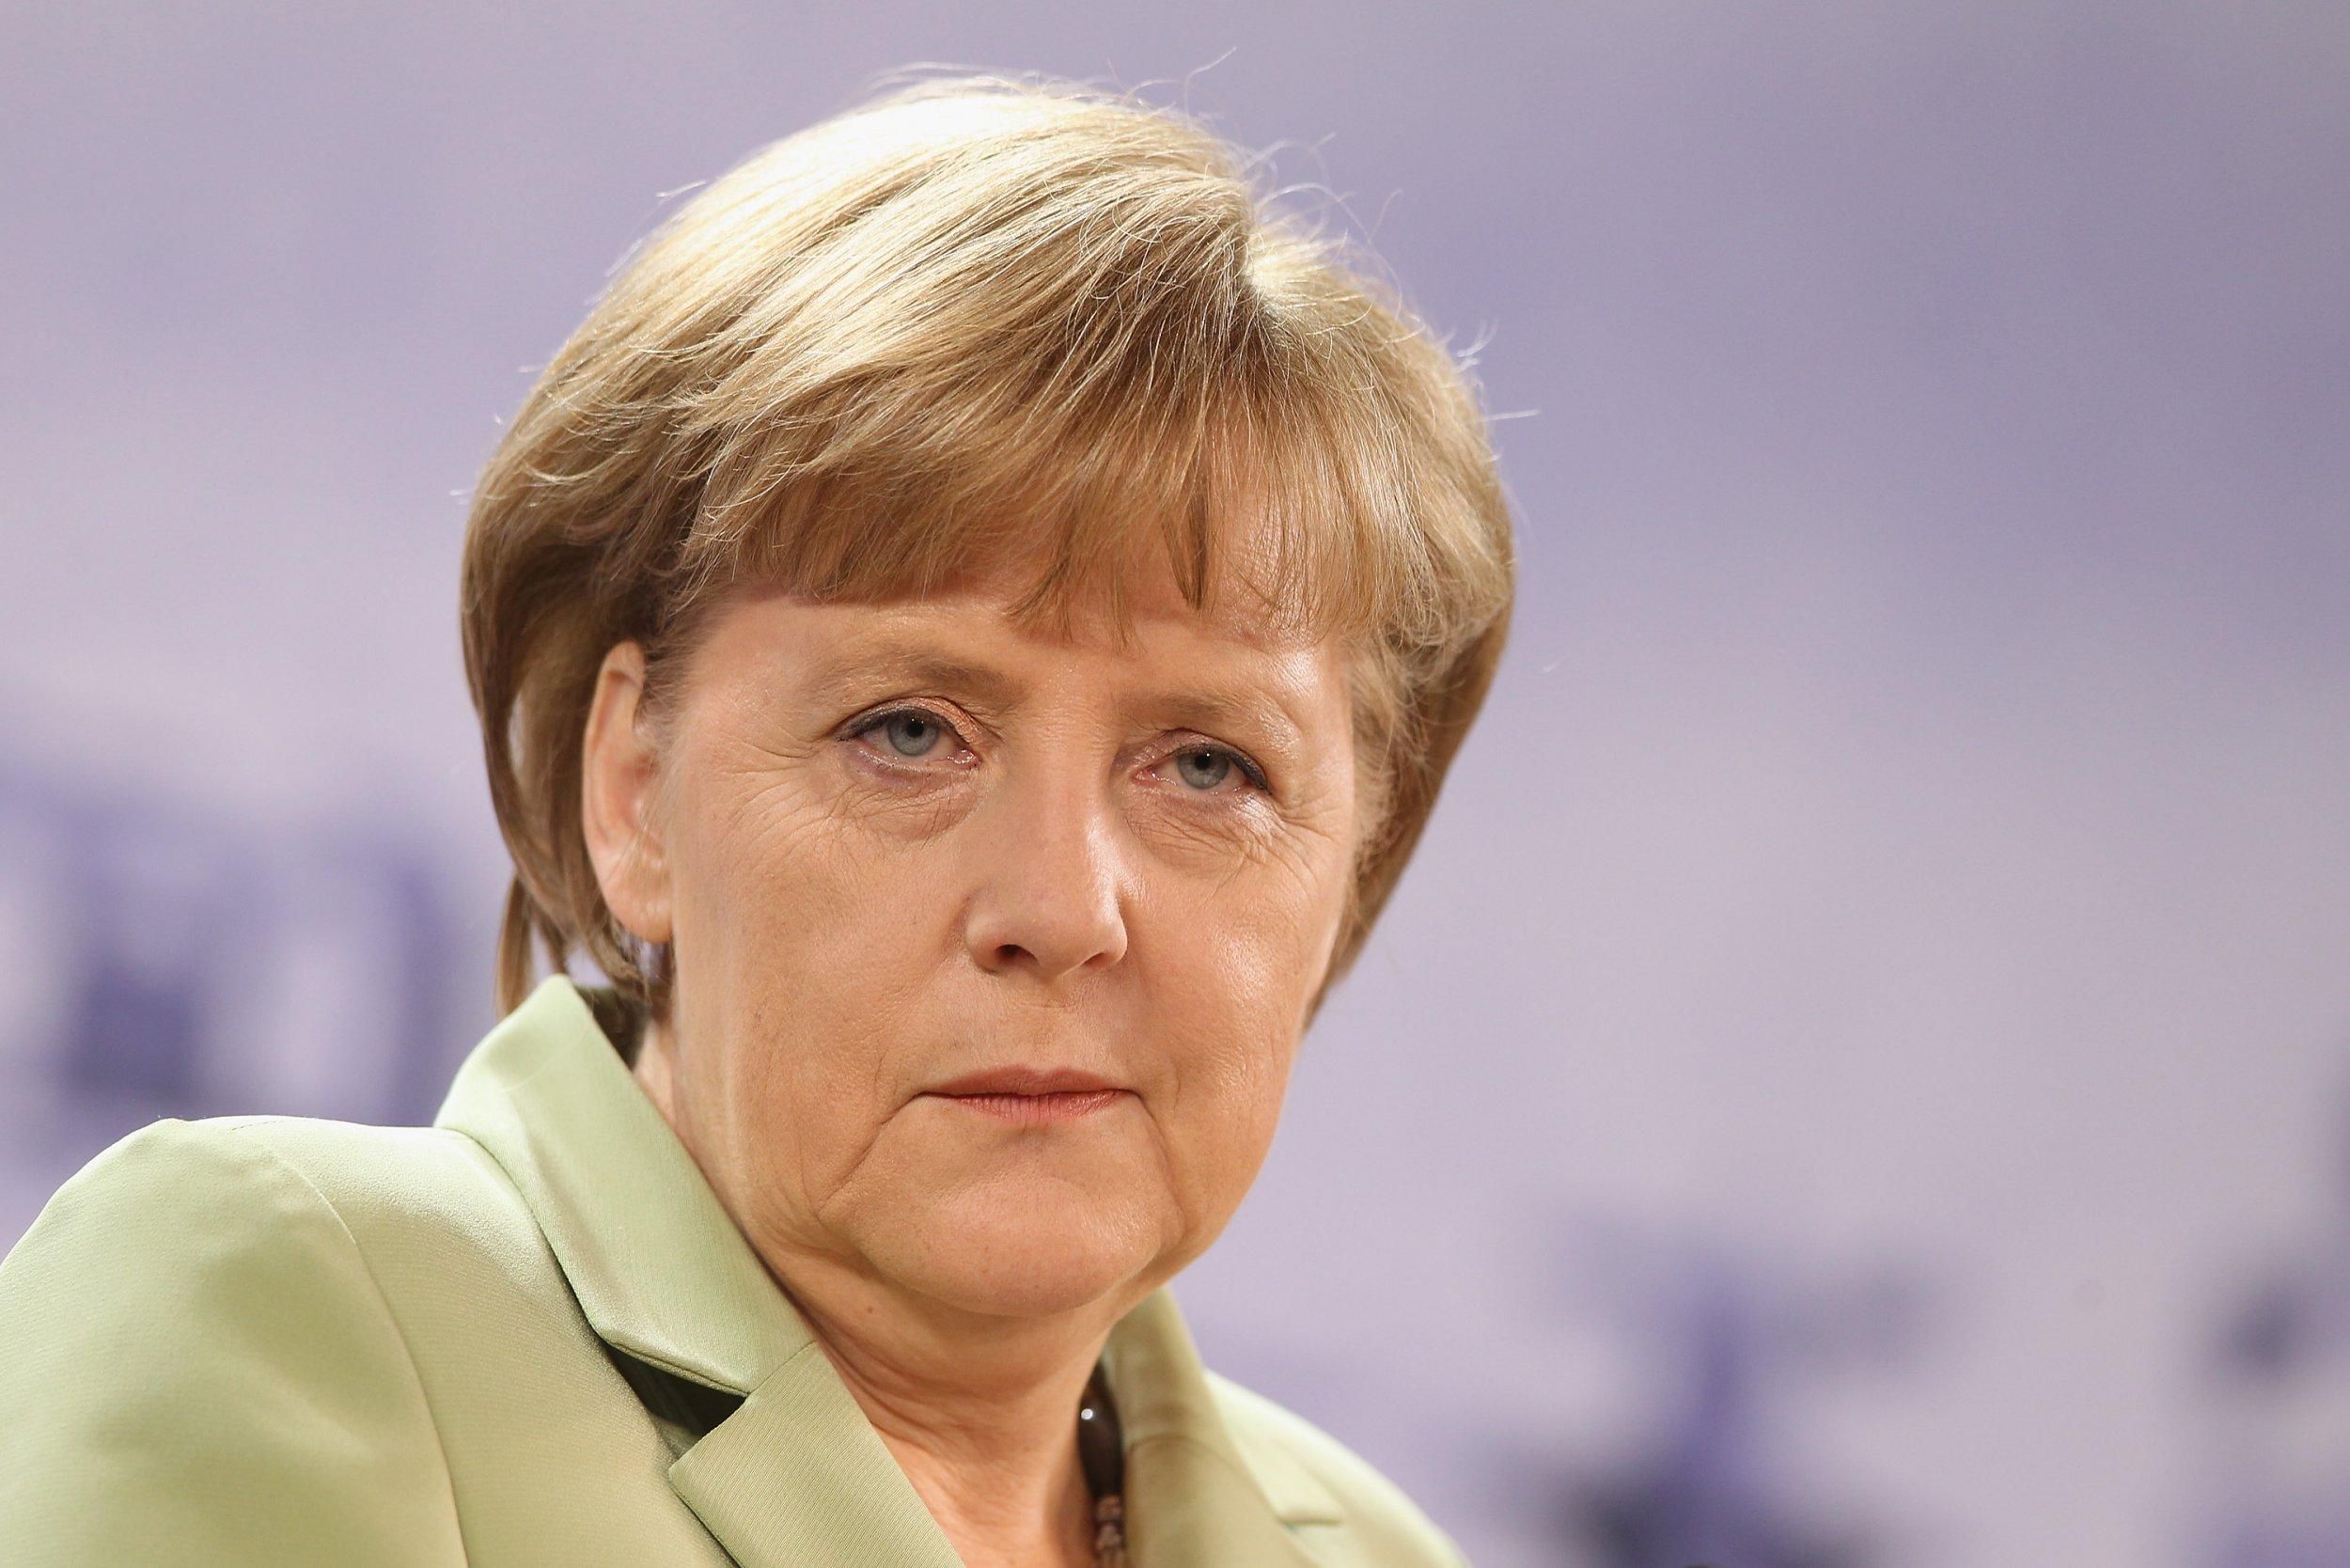 Состояние здоровья Ангелы Меркель прокомментировала власть Германии: что с канцлером